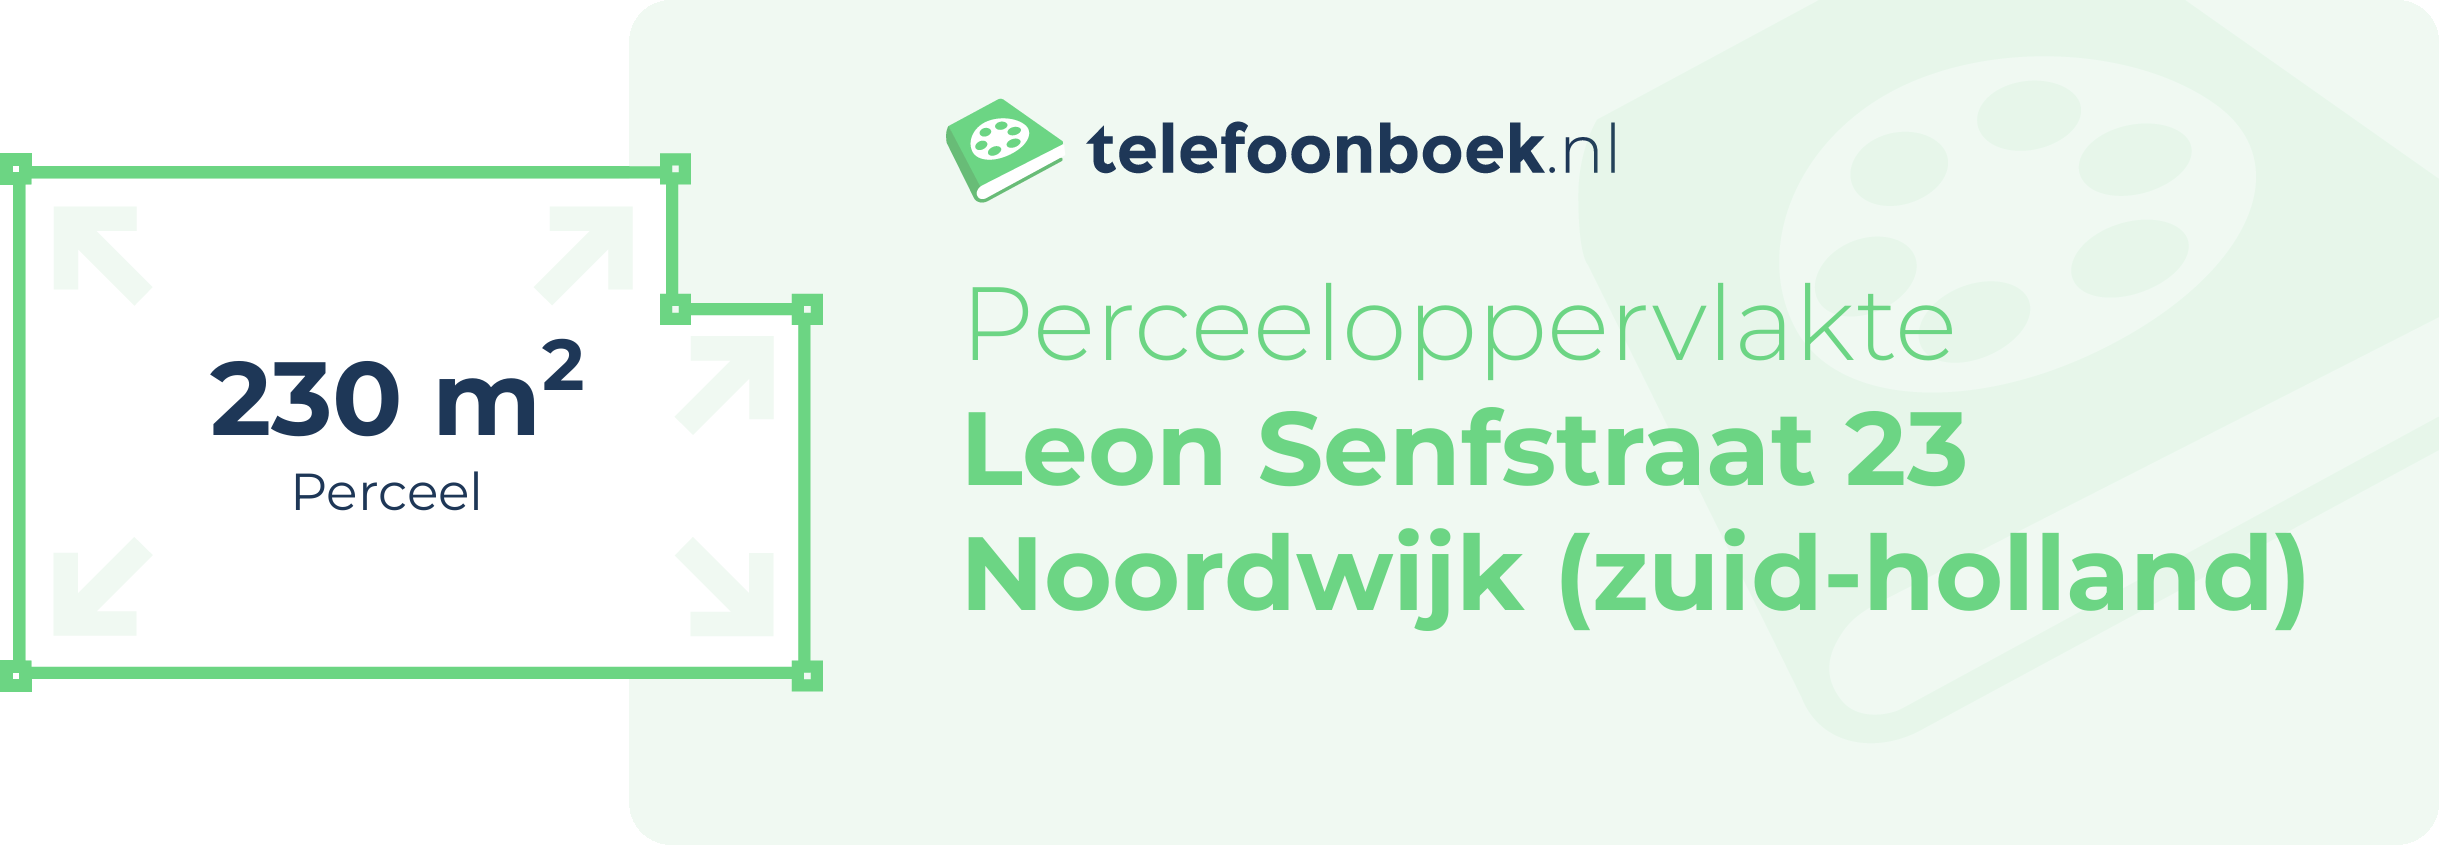 Perceeloppervlakte Leon Senfstraat 23 Noordwijk (Zuid-Holland)